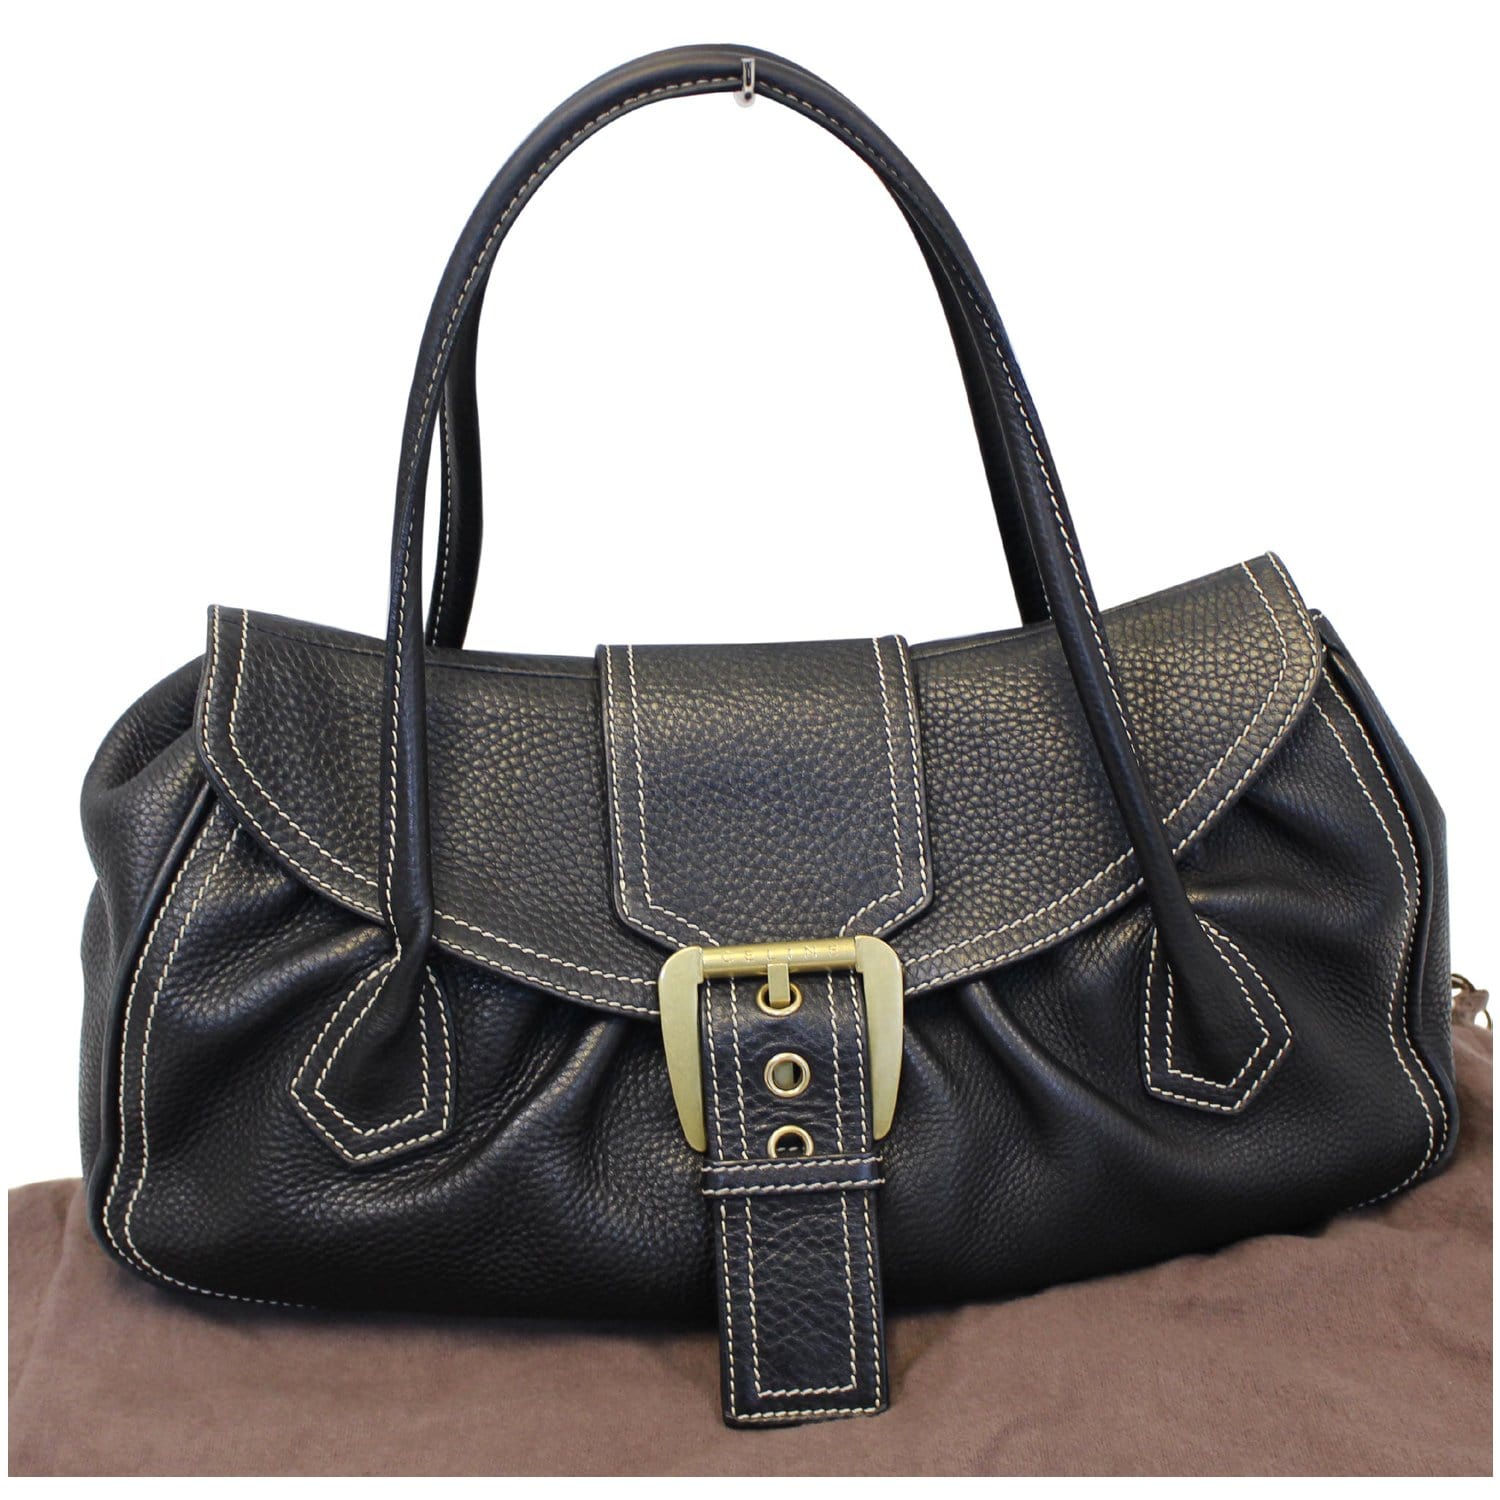 Celine Bag - Celine Buckle Leather Satchel Bag Black